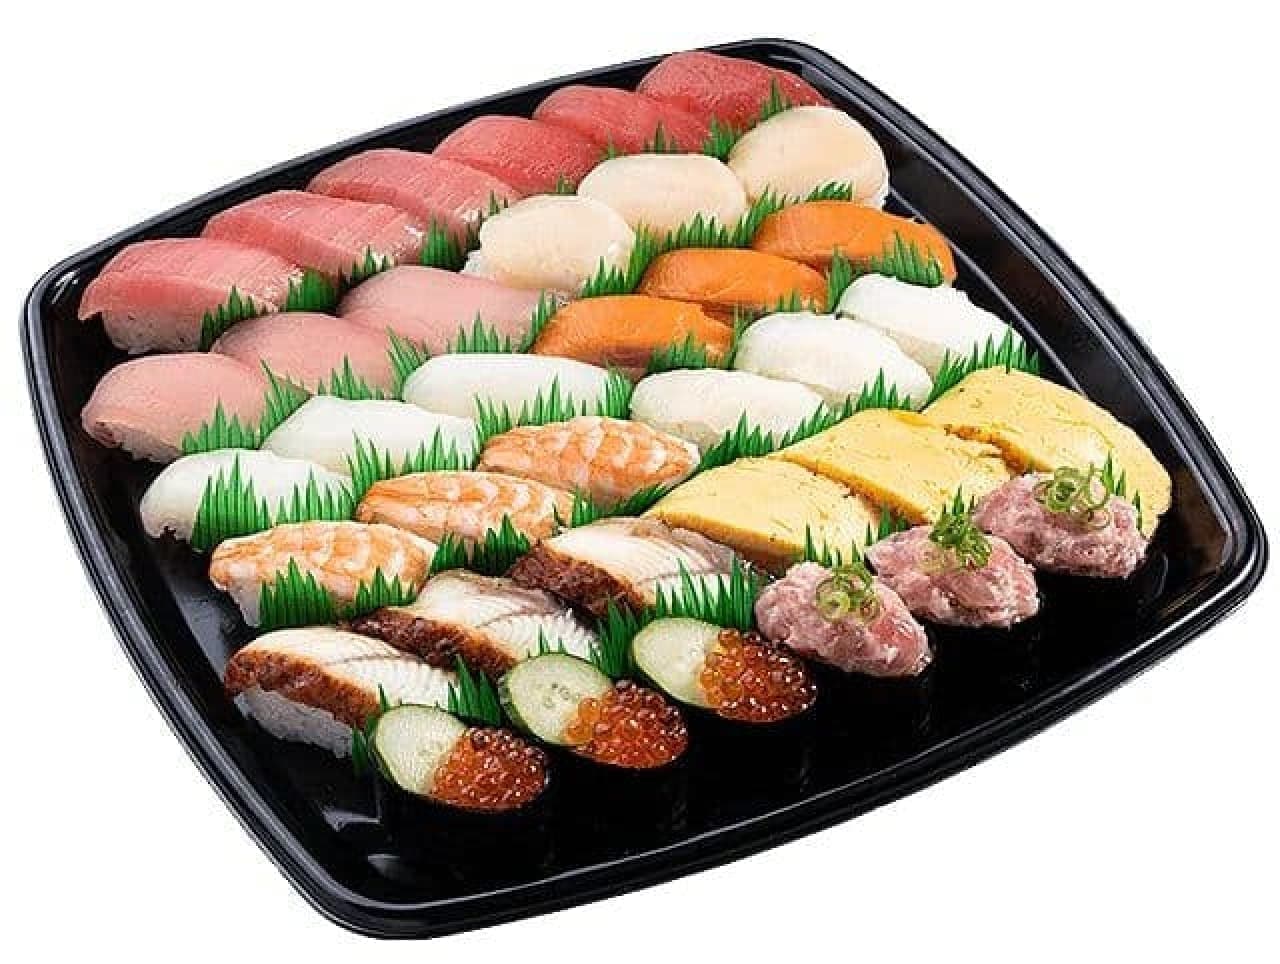 Kappa Sushi "Satisfaction Set